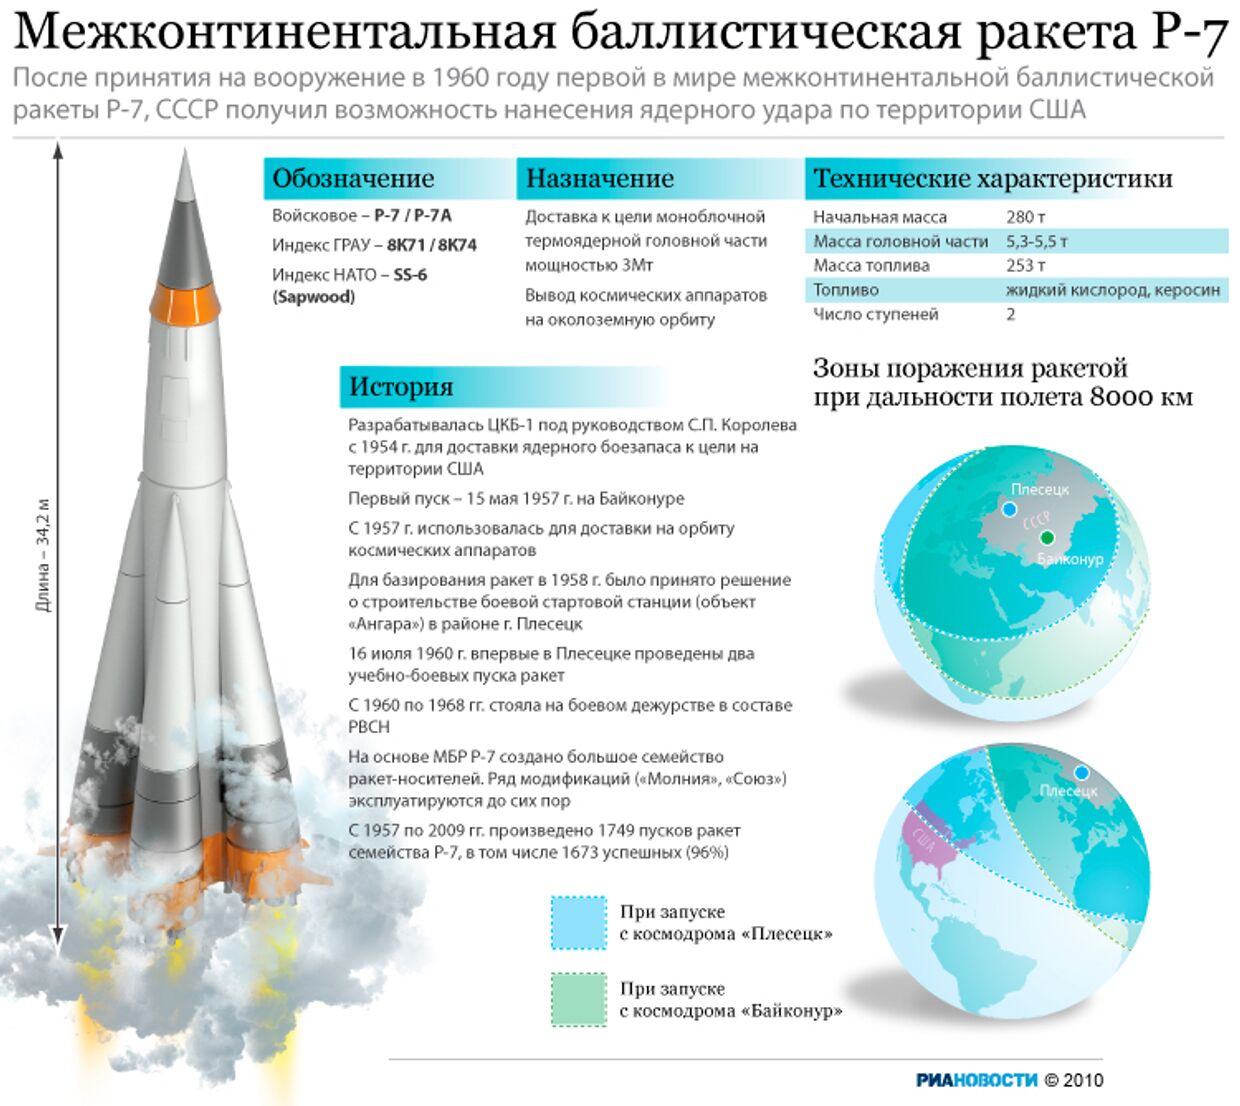 Межконтинентальная баллистическая ракета Р-7